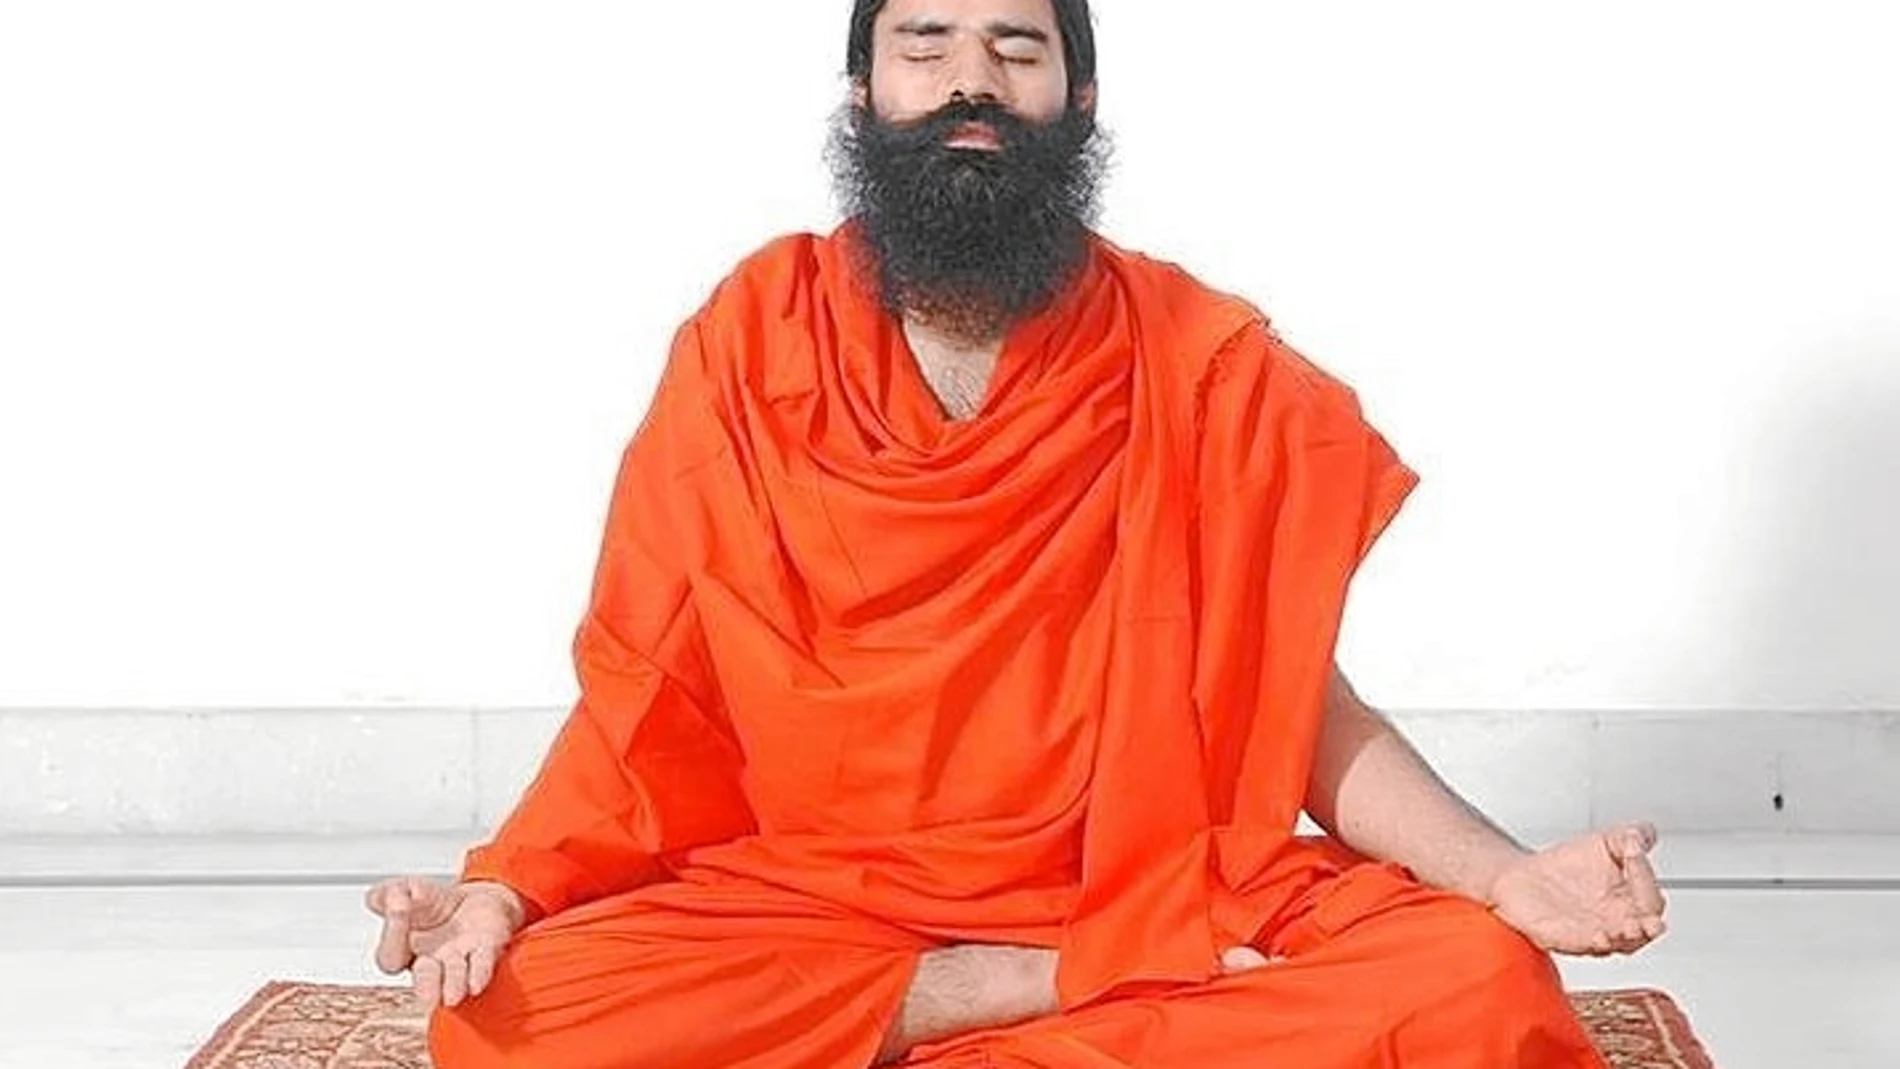 El gurú del yoga cuenta con el apoyo de Narendra Modi, el primer ministro indio